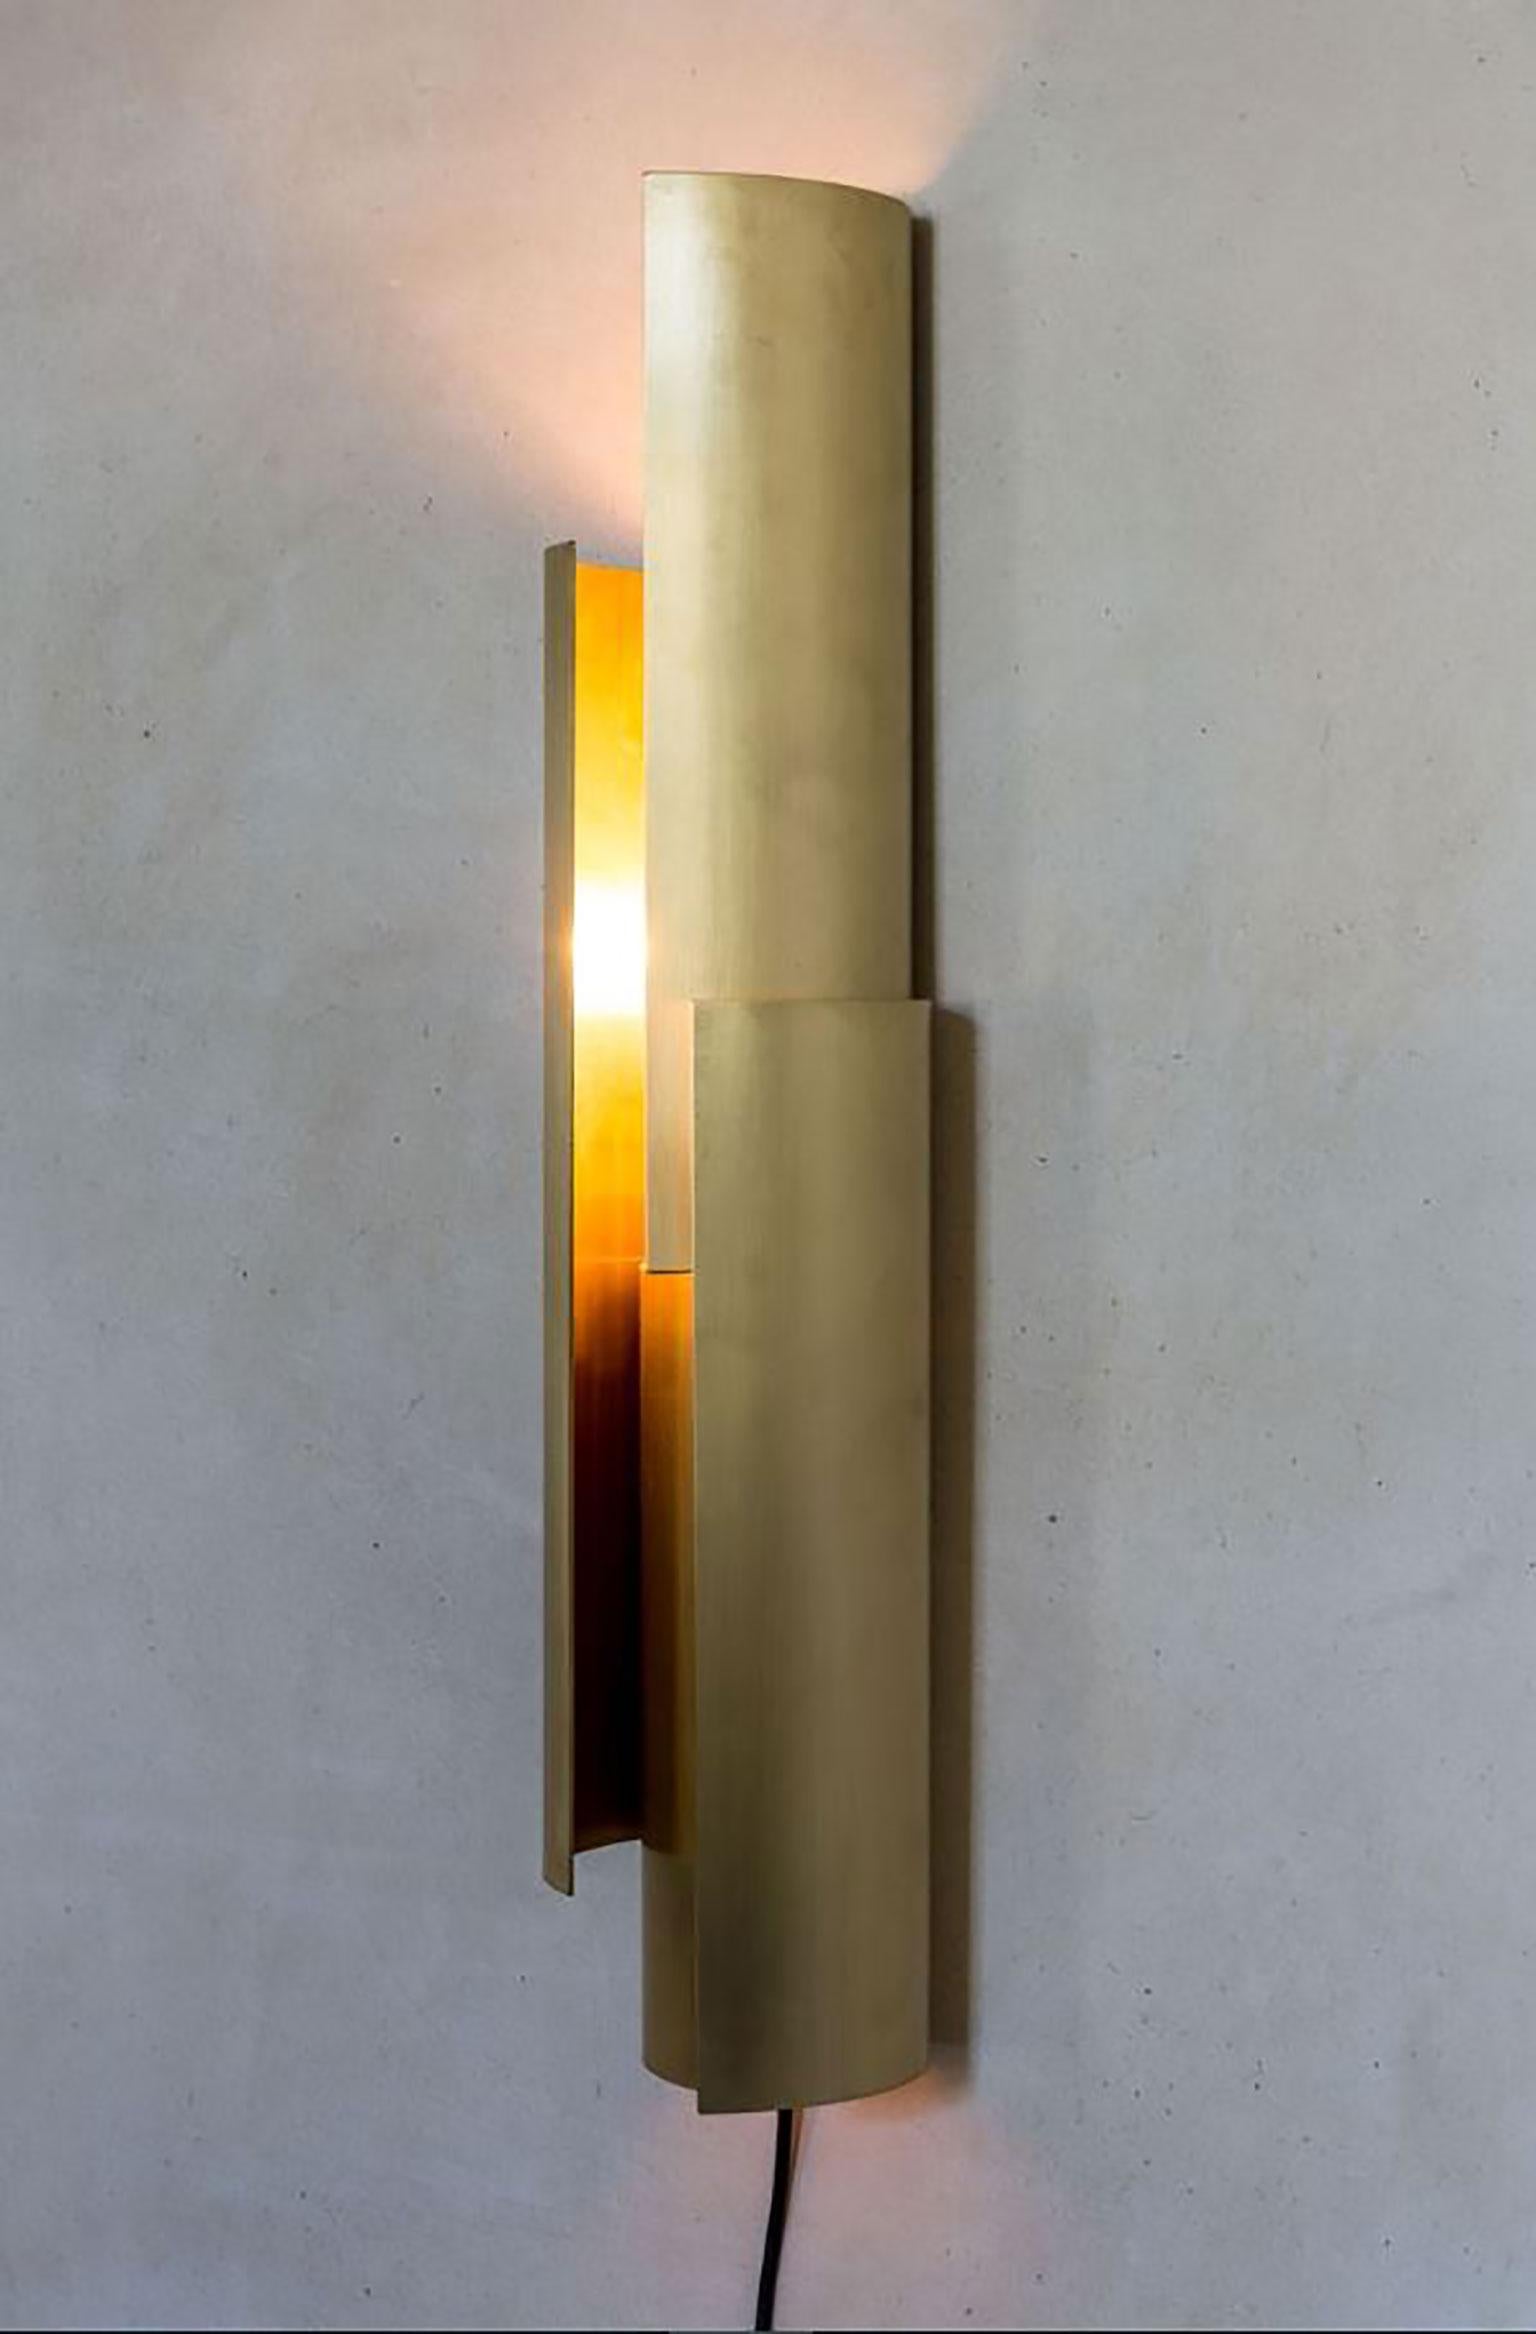 Sfoglia Wandleuchte von Aldo Parisotto & Massimo Formenton für Mingardo. Sfoglia ist ein leuchtendes Objekt aus schwarzem Stahl oder rohem Messing. Die Wandleuchte wird aus kalandrierten oder gefalteten Blechen zusammengesetzt. Durch die